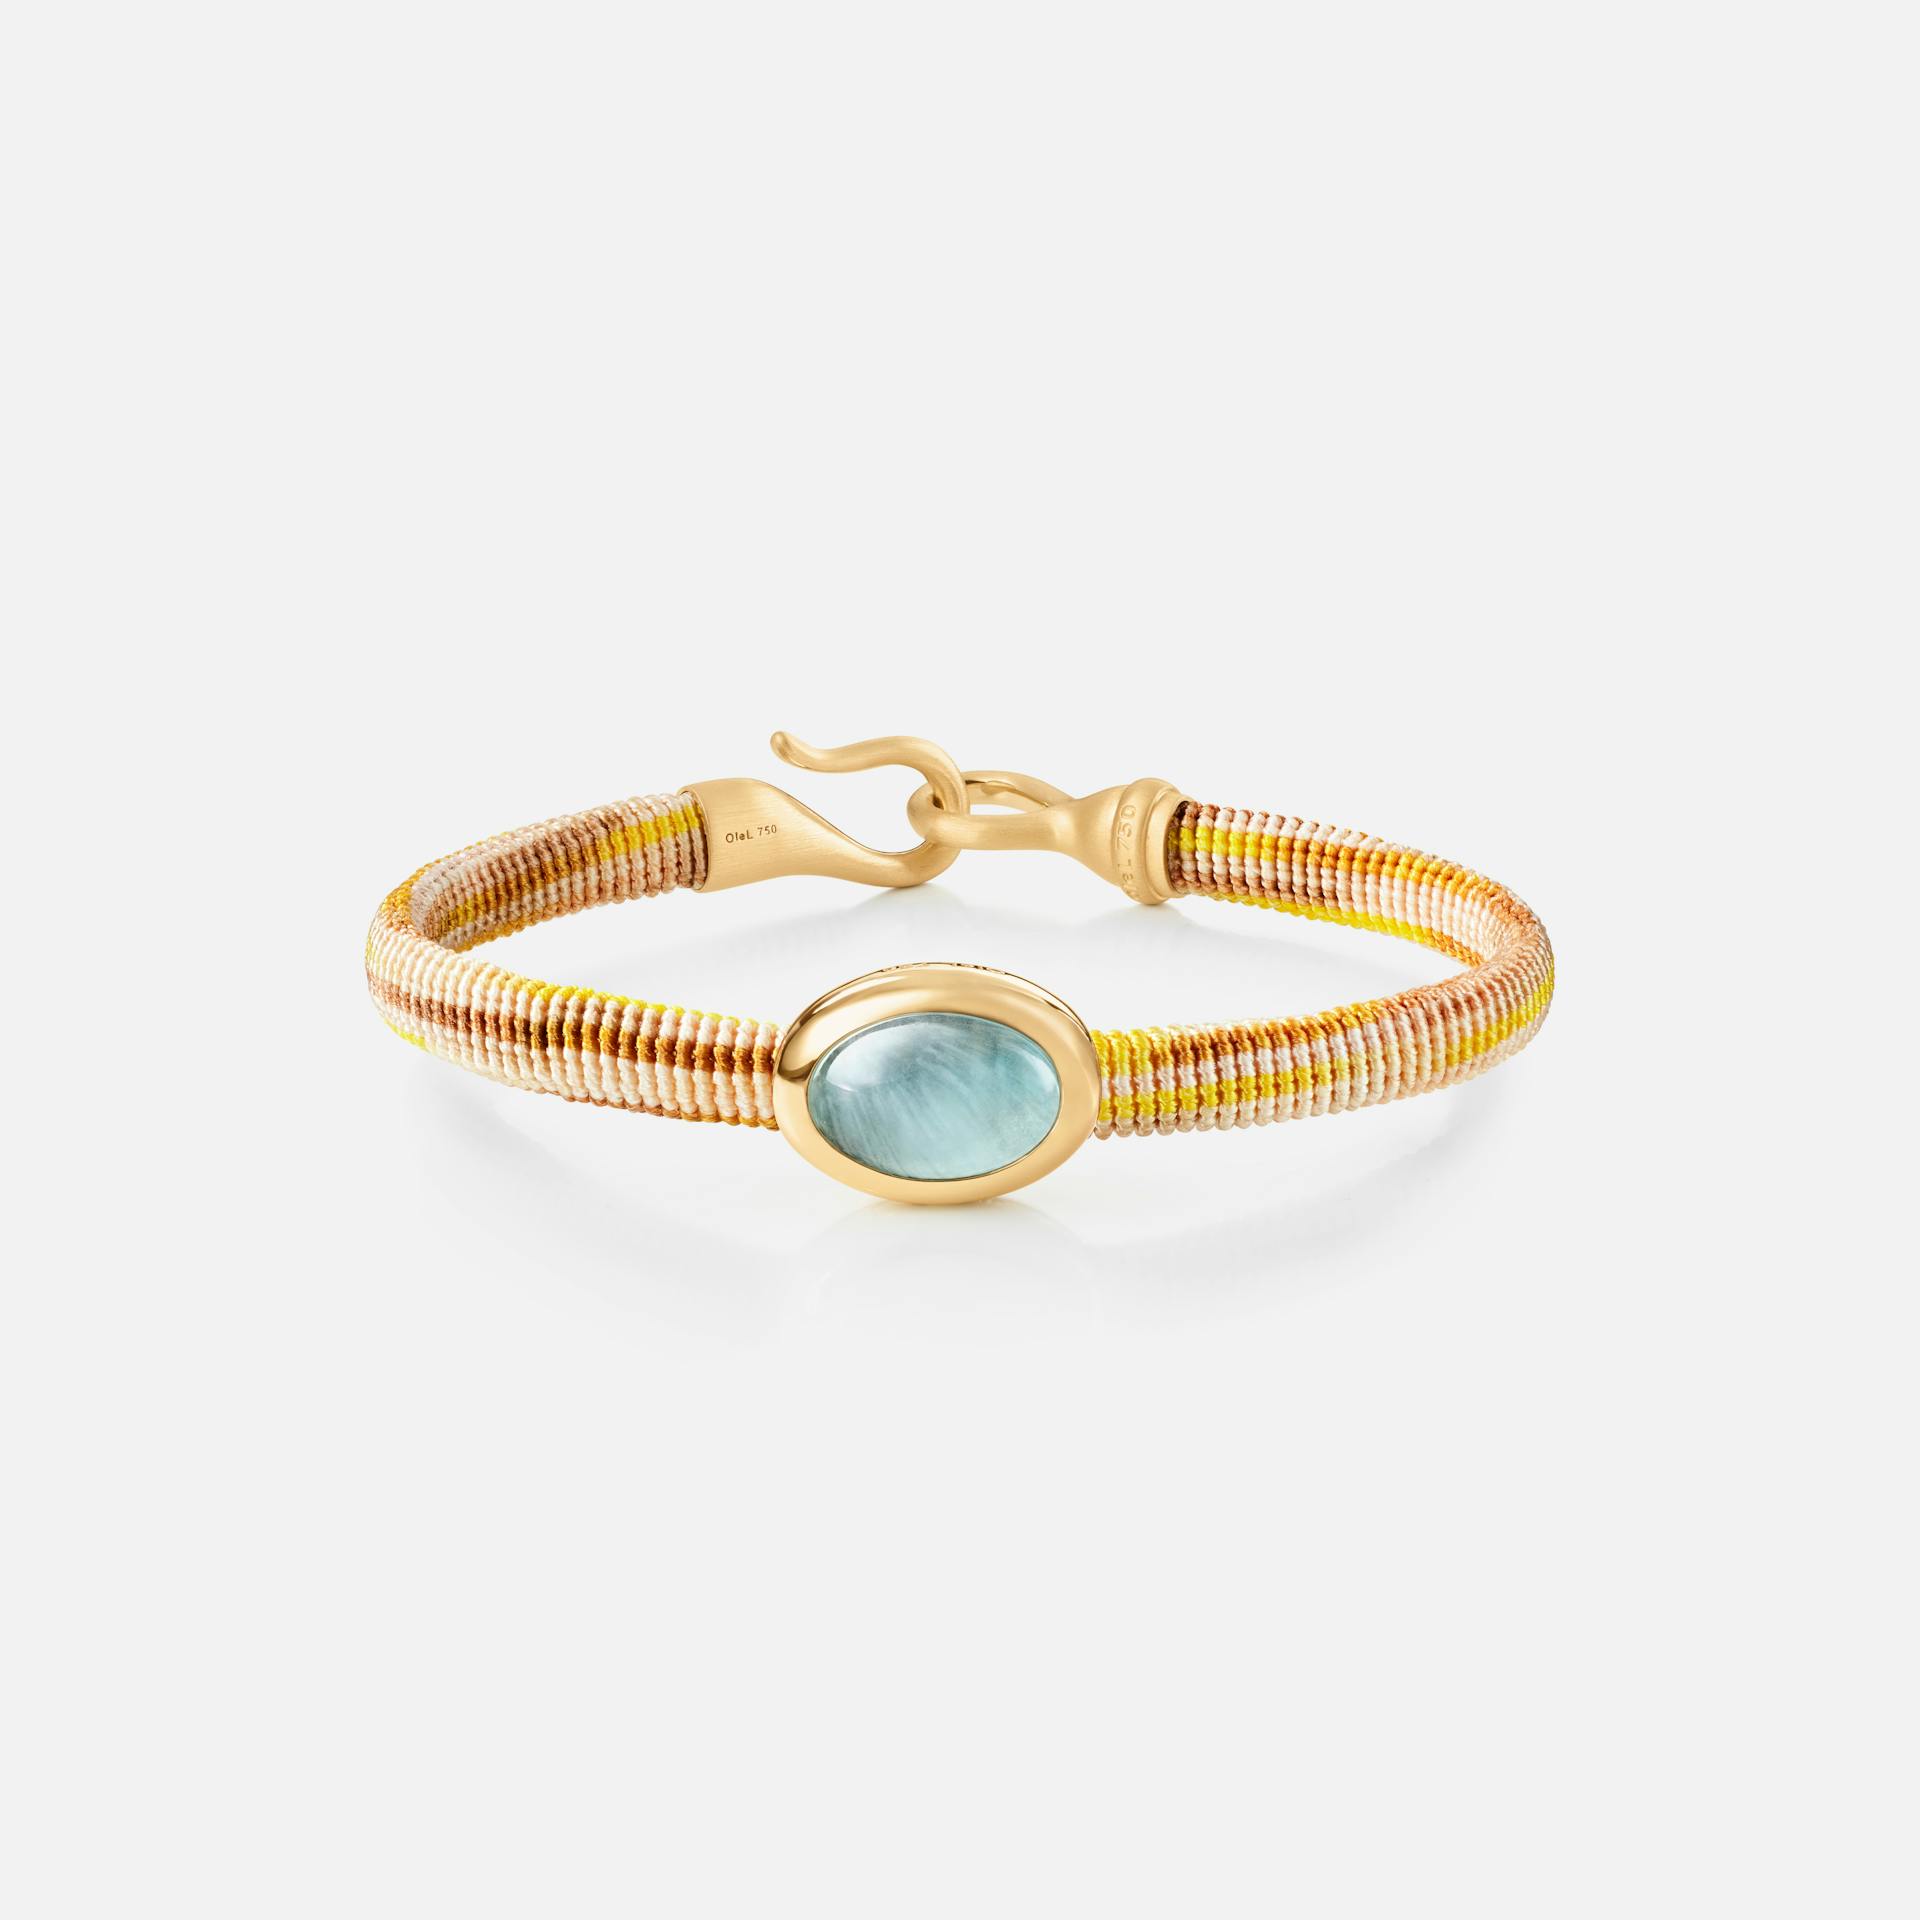 Life Bracelet with aquamarine 6 mm 18k guld og akvamarin med Golden snor